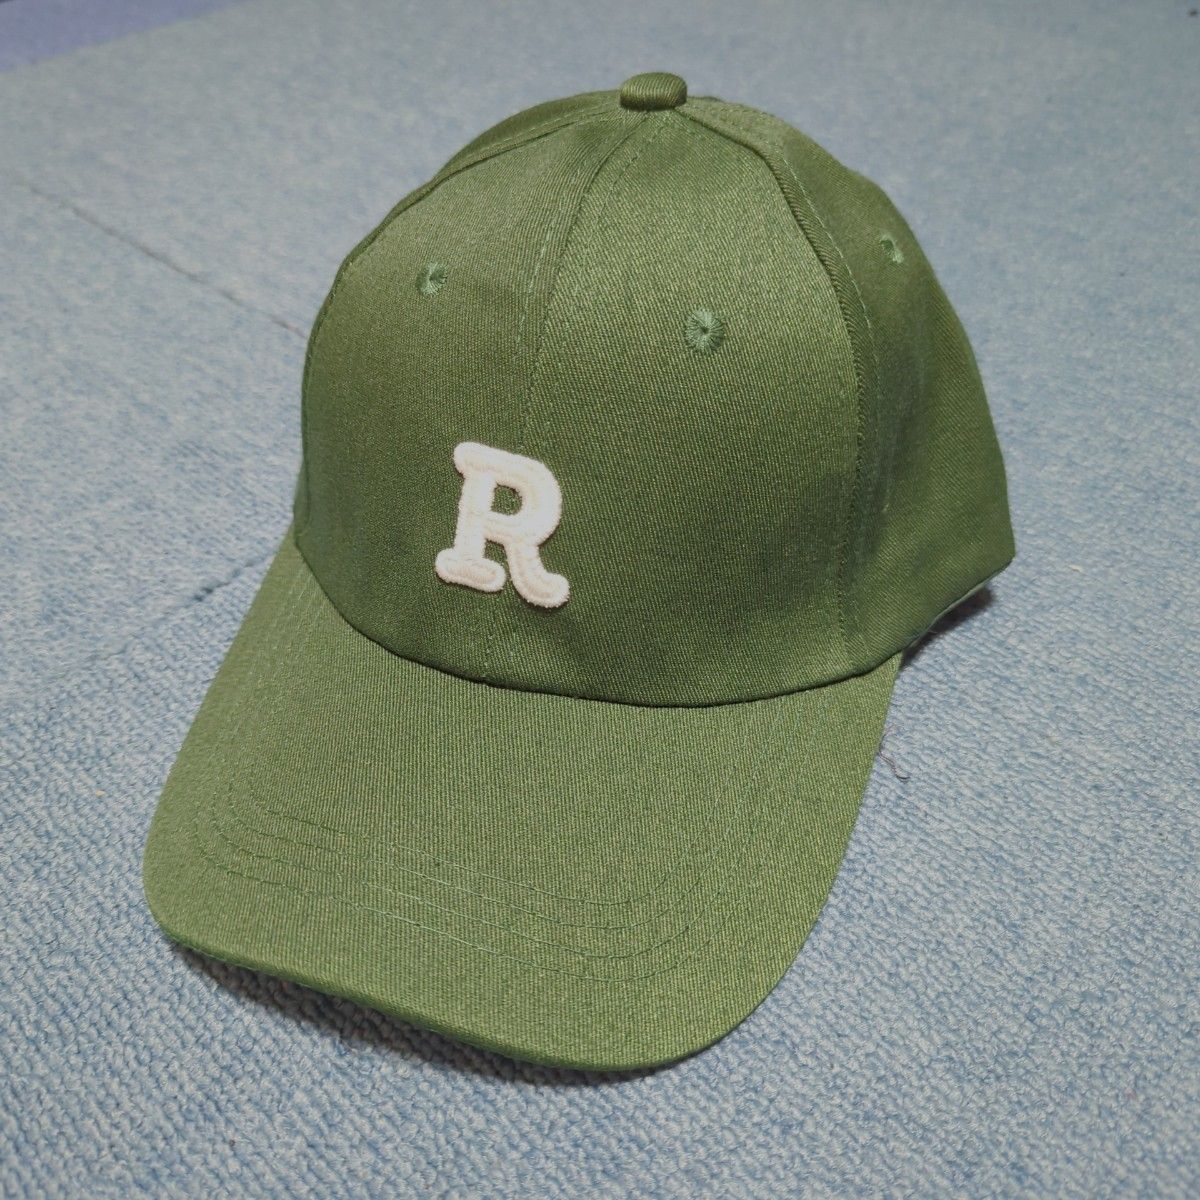 レディース 帽子 キャップ カジュアル グリーン 緑 シンプル 韓国 ロゴ おしゃれ ストリート 原宿系